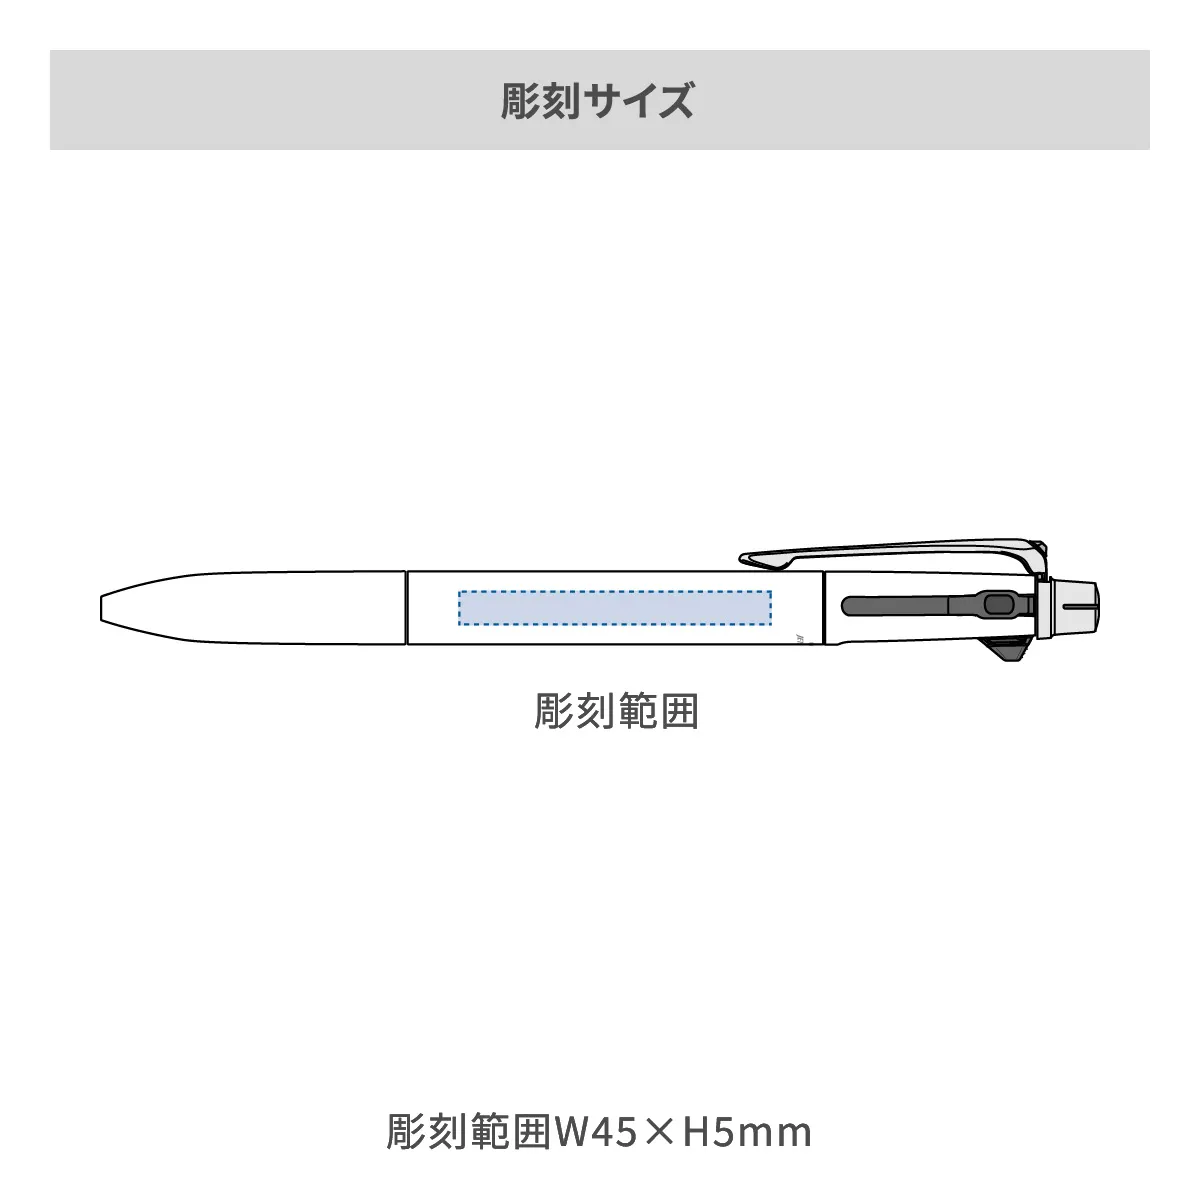 【短納期】三菱鉛筆 ジェットストリーム プライム 3色ボールペン 0.7mm【名入れボールペン / レーザー彫刻】 画像2